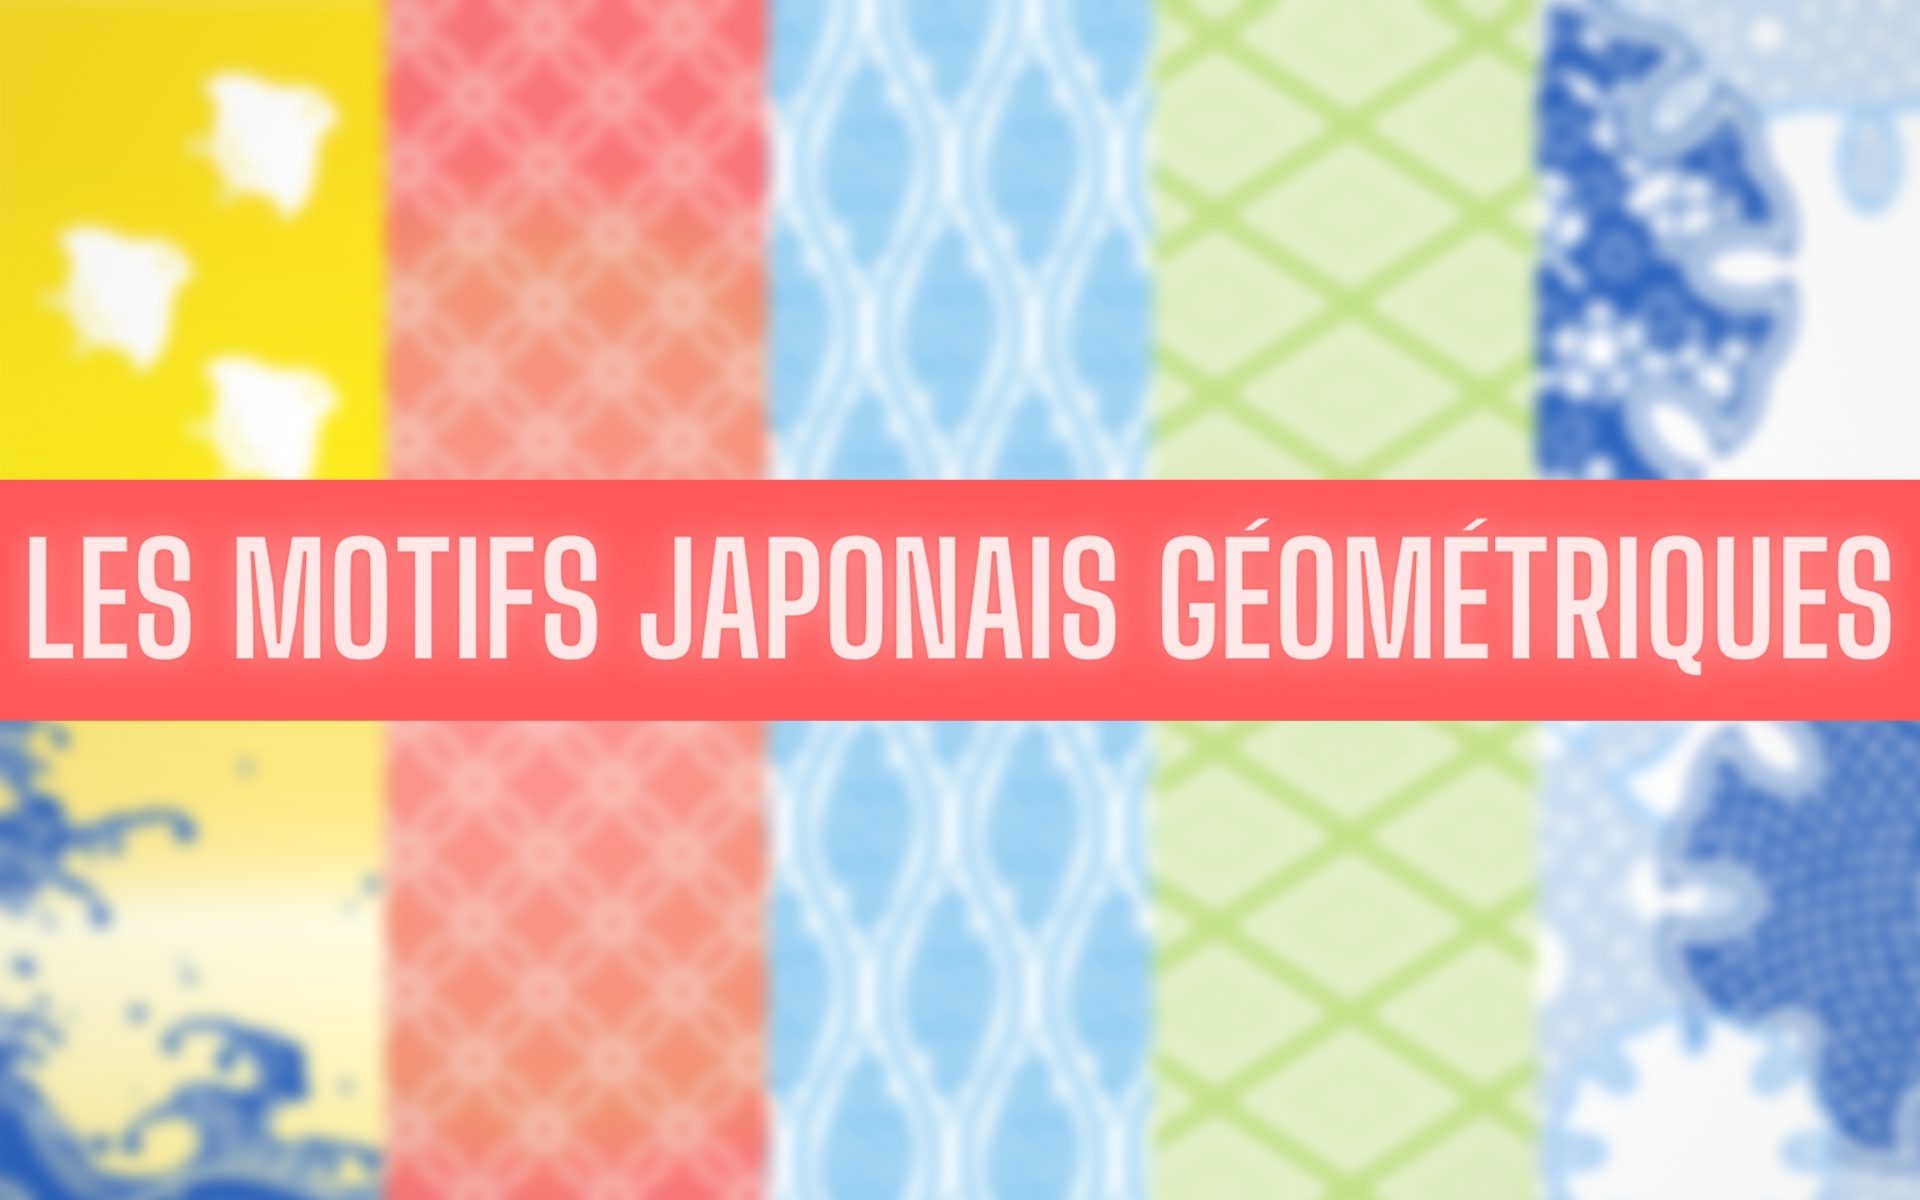 Encyclopédie des Motifs Japonais (Géométriques, Fleurs, Animaux